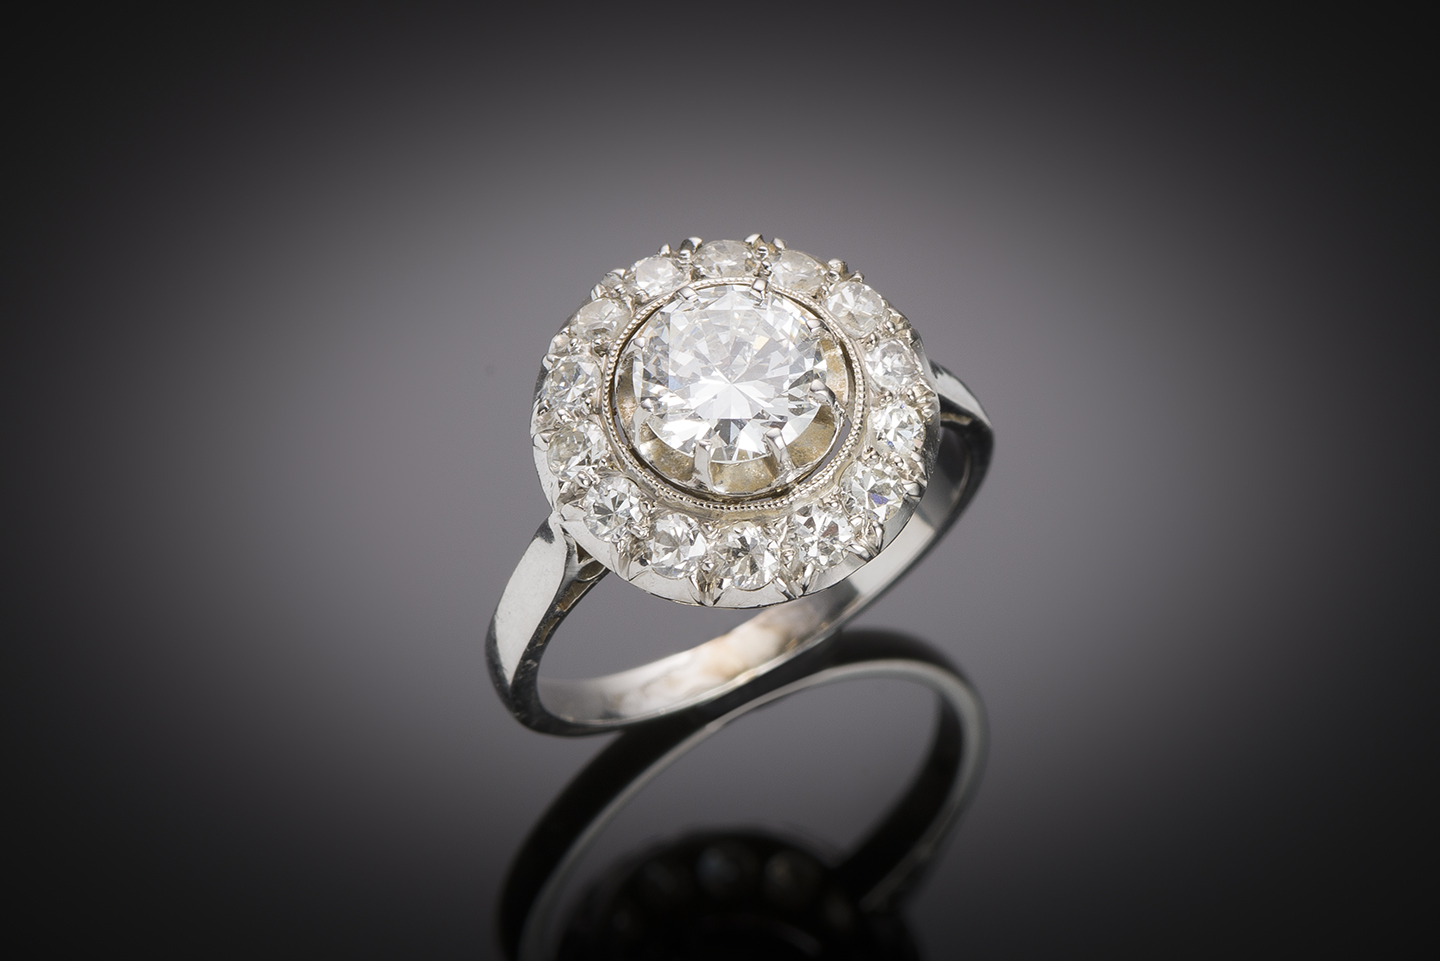 Bague Art déco diamants (1,60 carat, centre 0,90 carat) en platine. Travail français vers 1930.-1